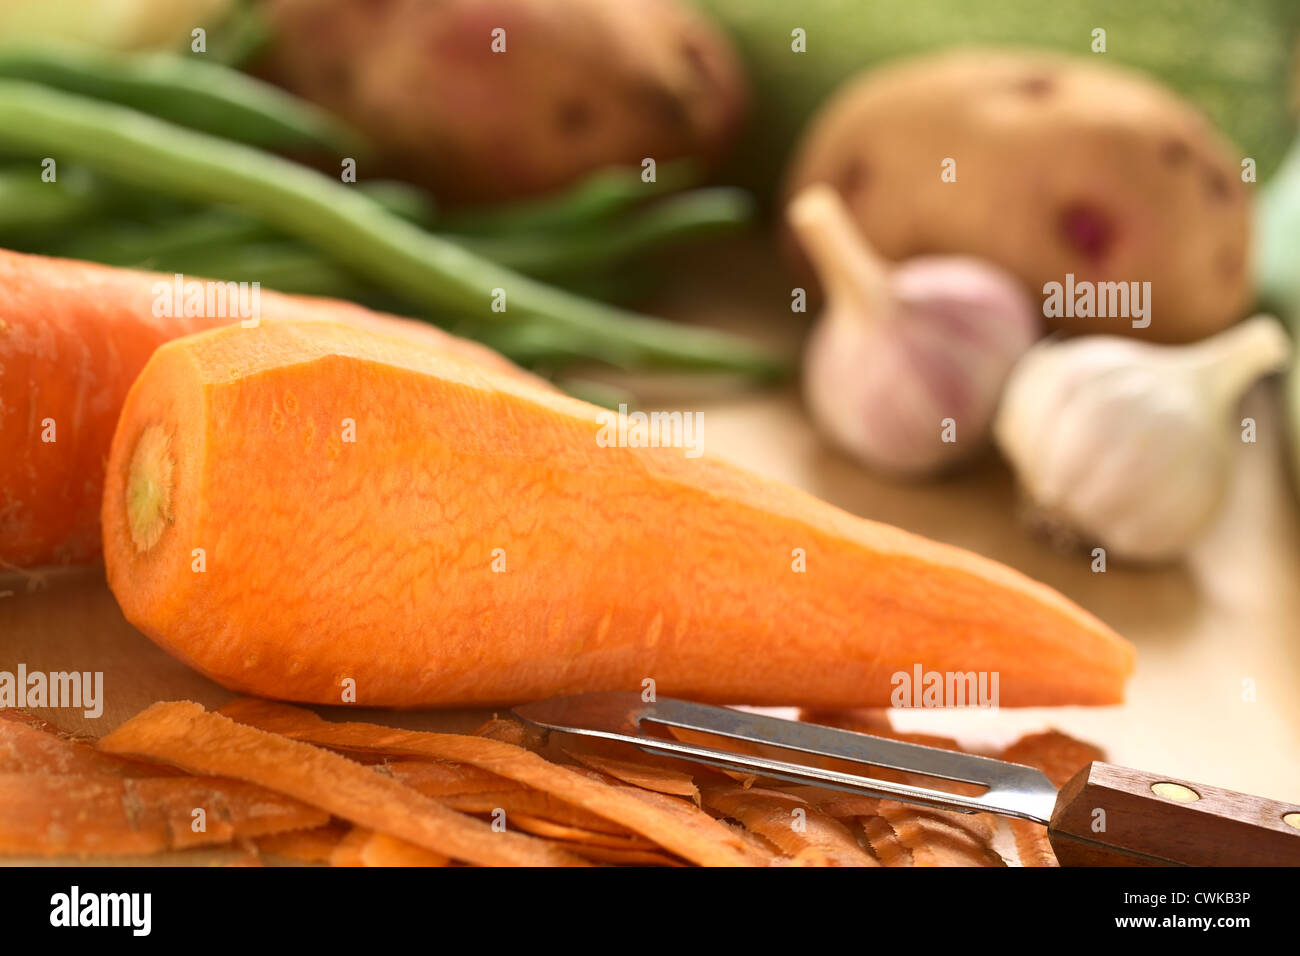 Materie sbucciate la carota con sbucciatore e altri ortaggi (verde fagiolo, patata, aglio) sulla tavola di legno (messa a fuoco selettiva) Foto Stock